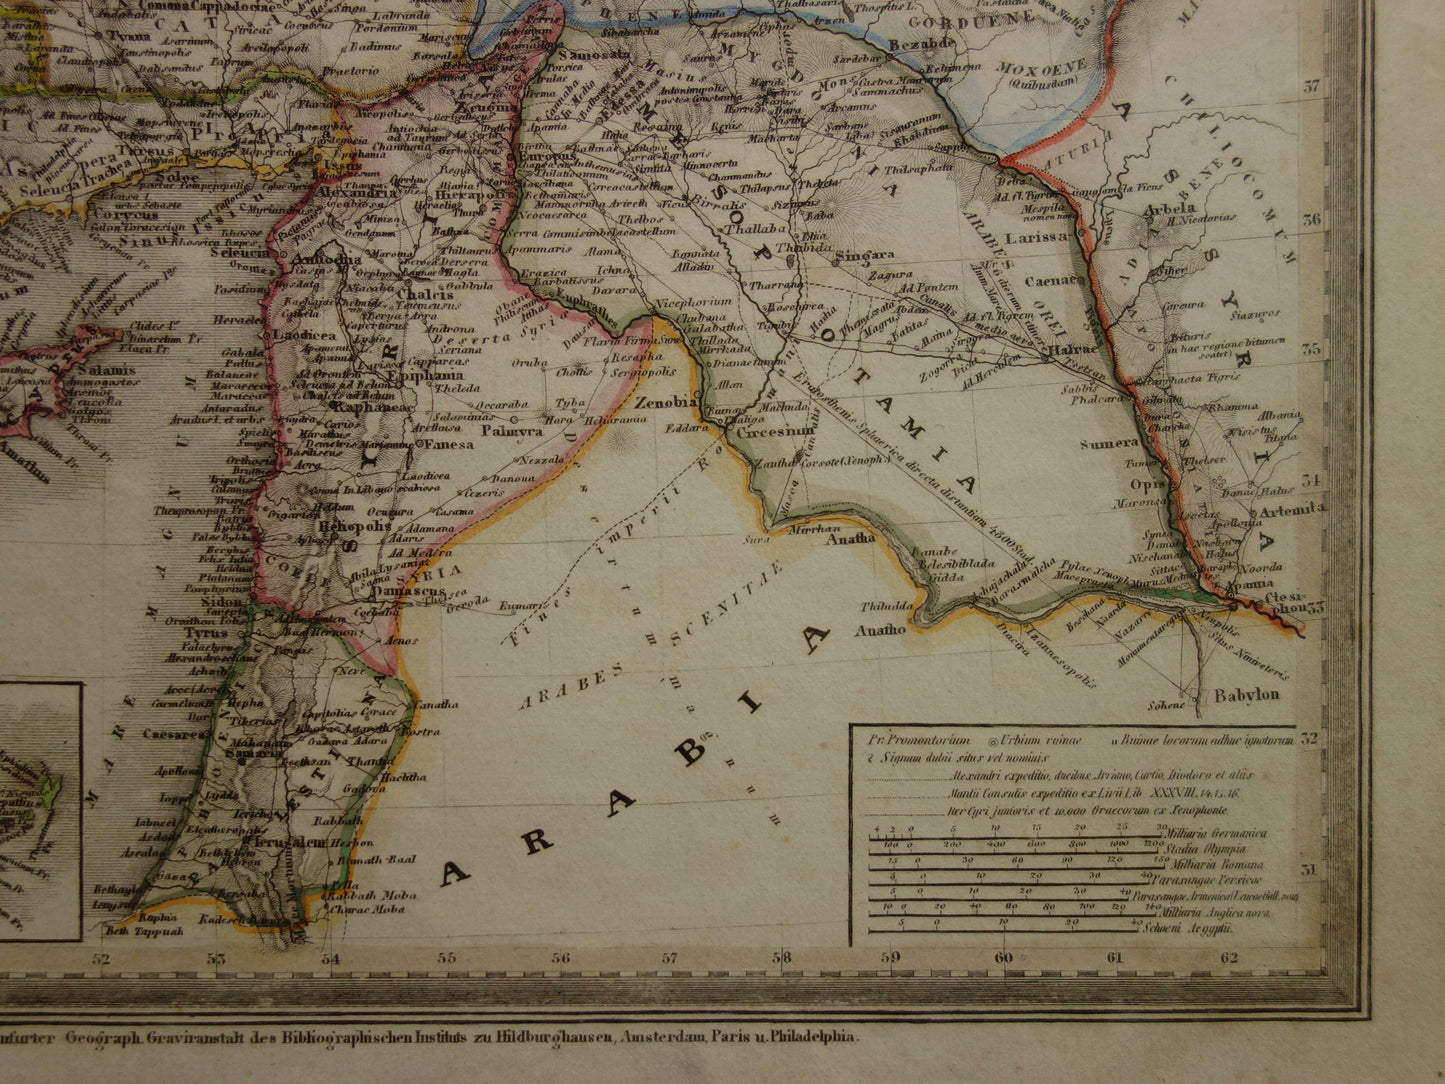 KLEIN AZIË oude kaart van Turkije Syrië Mesopotamië in de oudheid 1850 originele antieke landkaart Midden-Oosten geschiedeniskaart